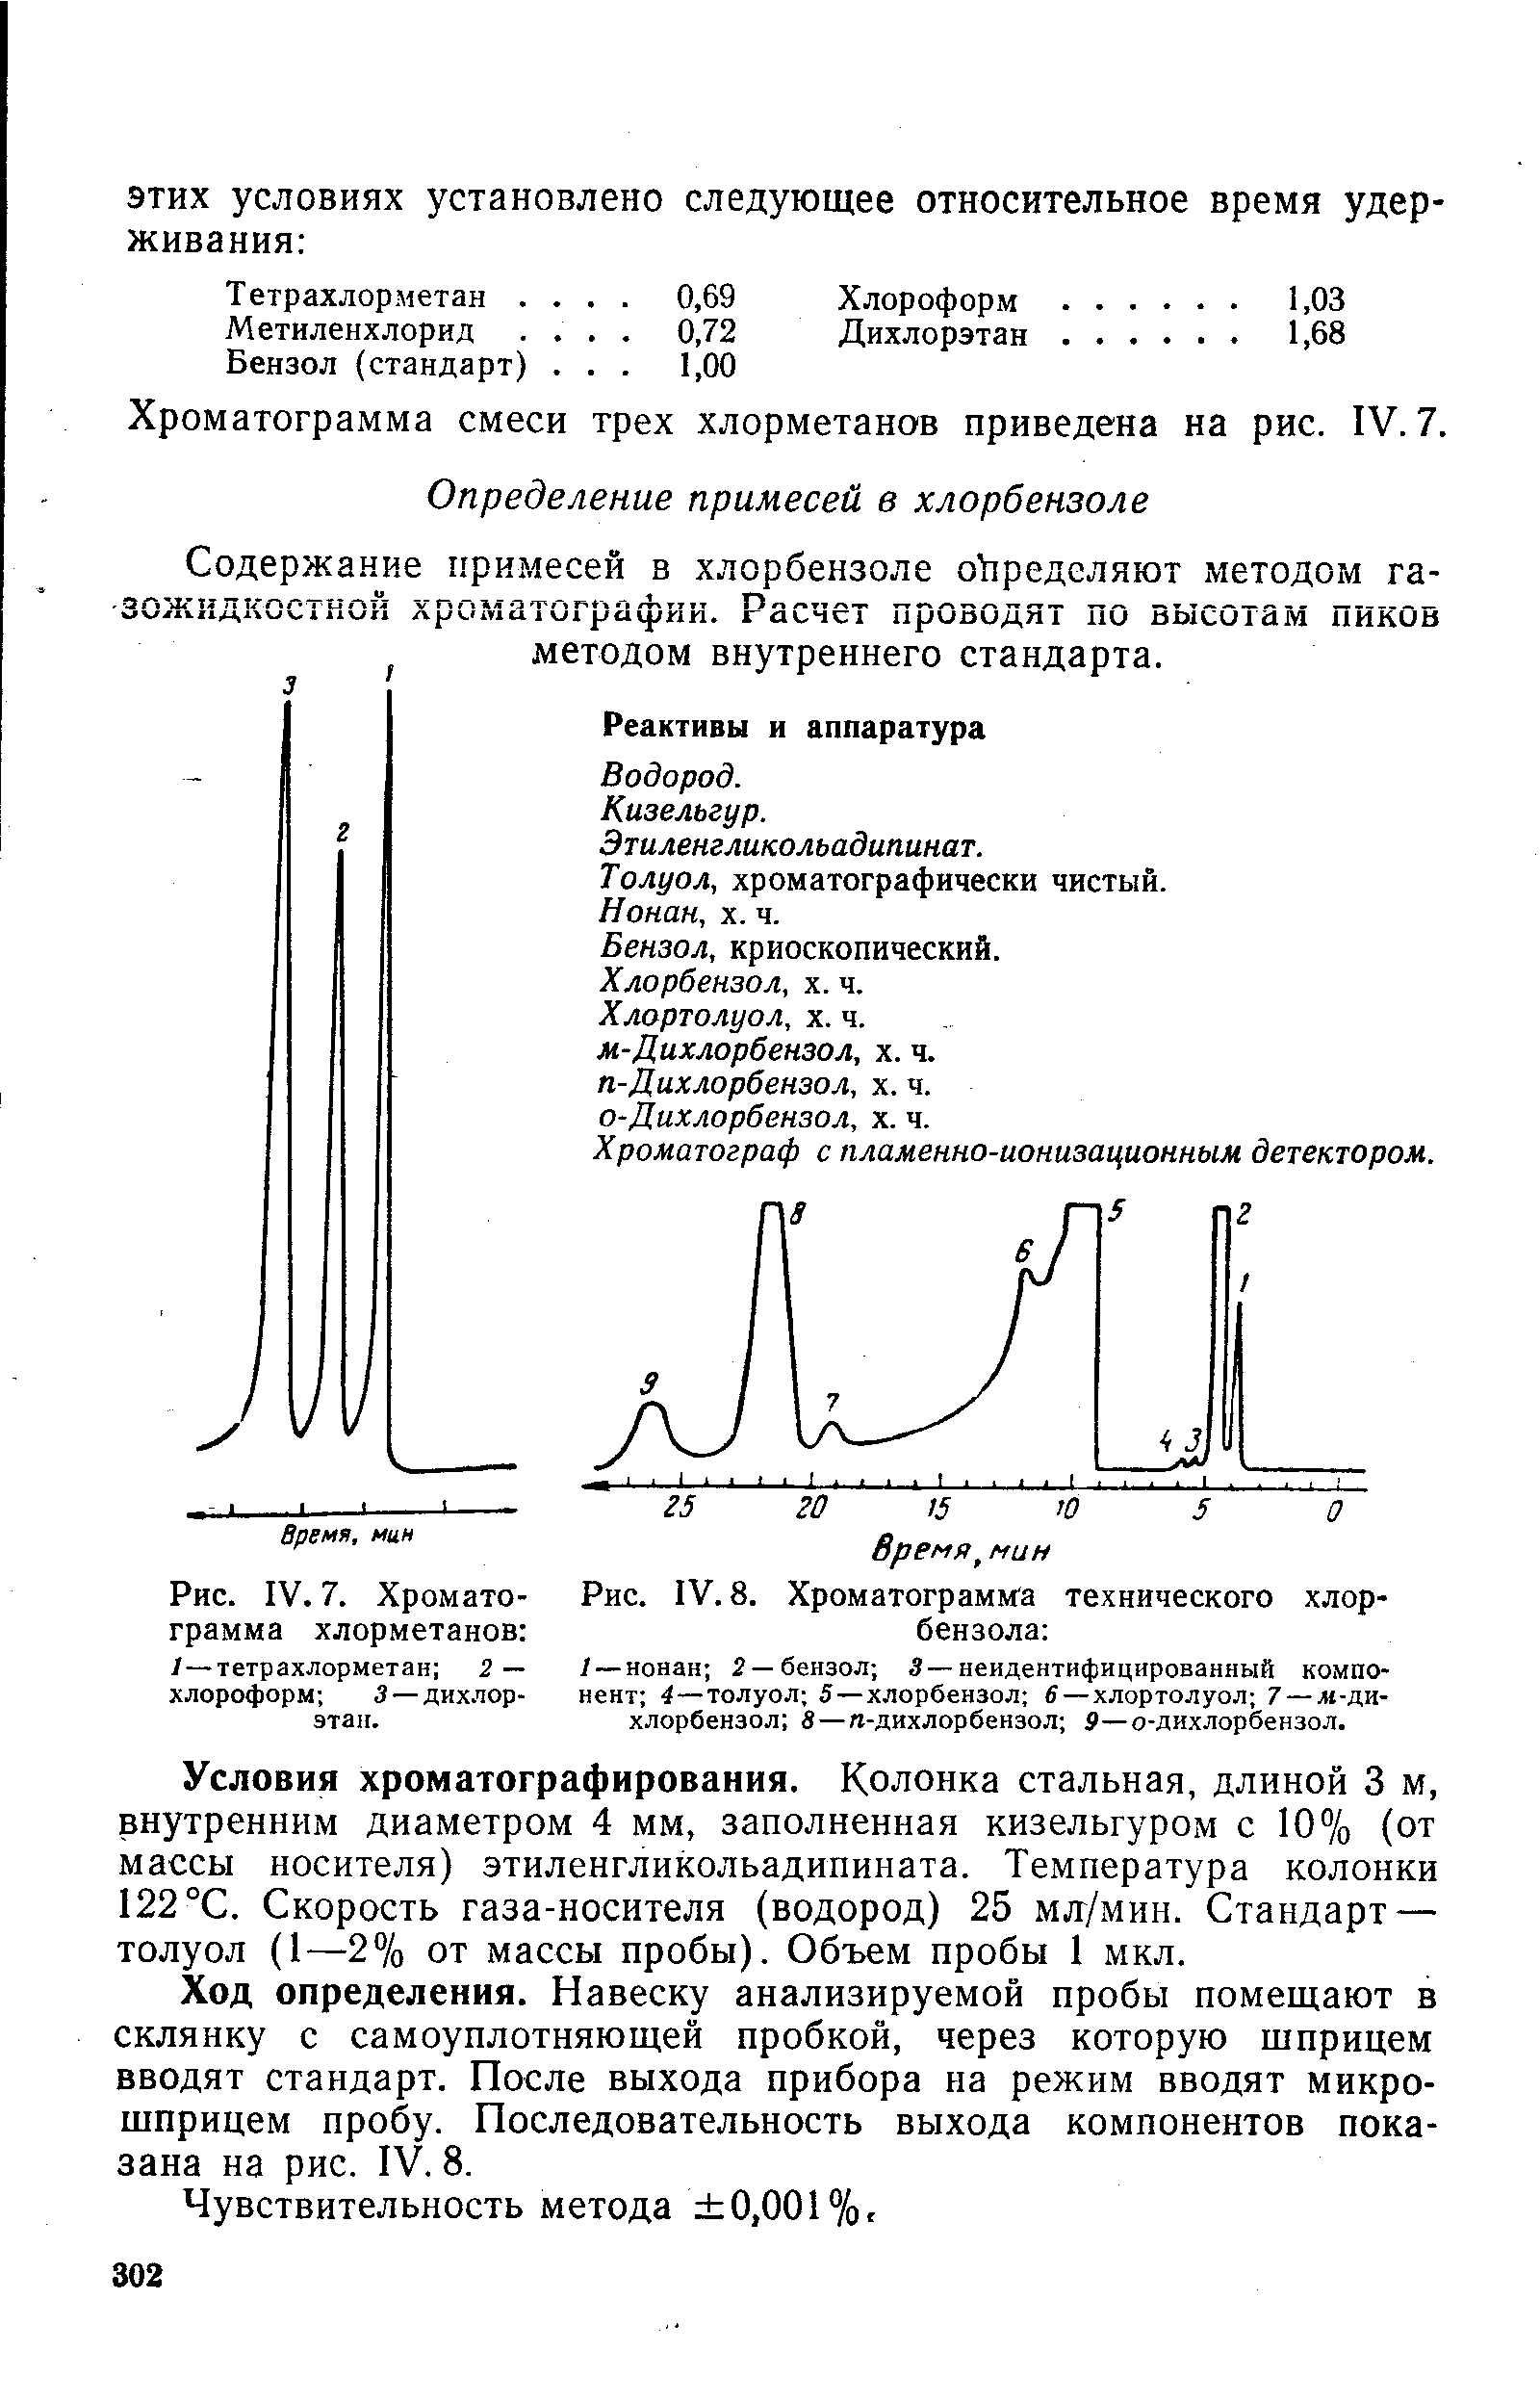 Содержание примесей в хлорбензоле определяют методом газожидкостной хроматох рафии. Расчет проводят по высотам пиков методом внутреннего стандарта.